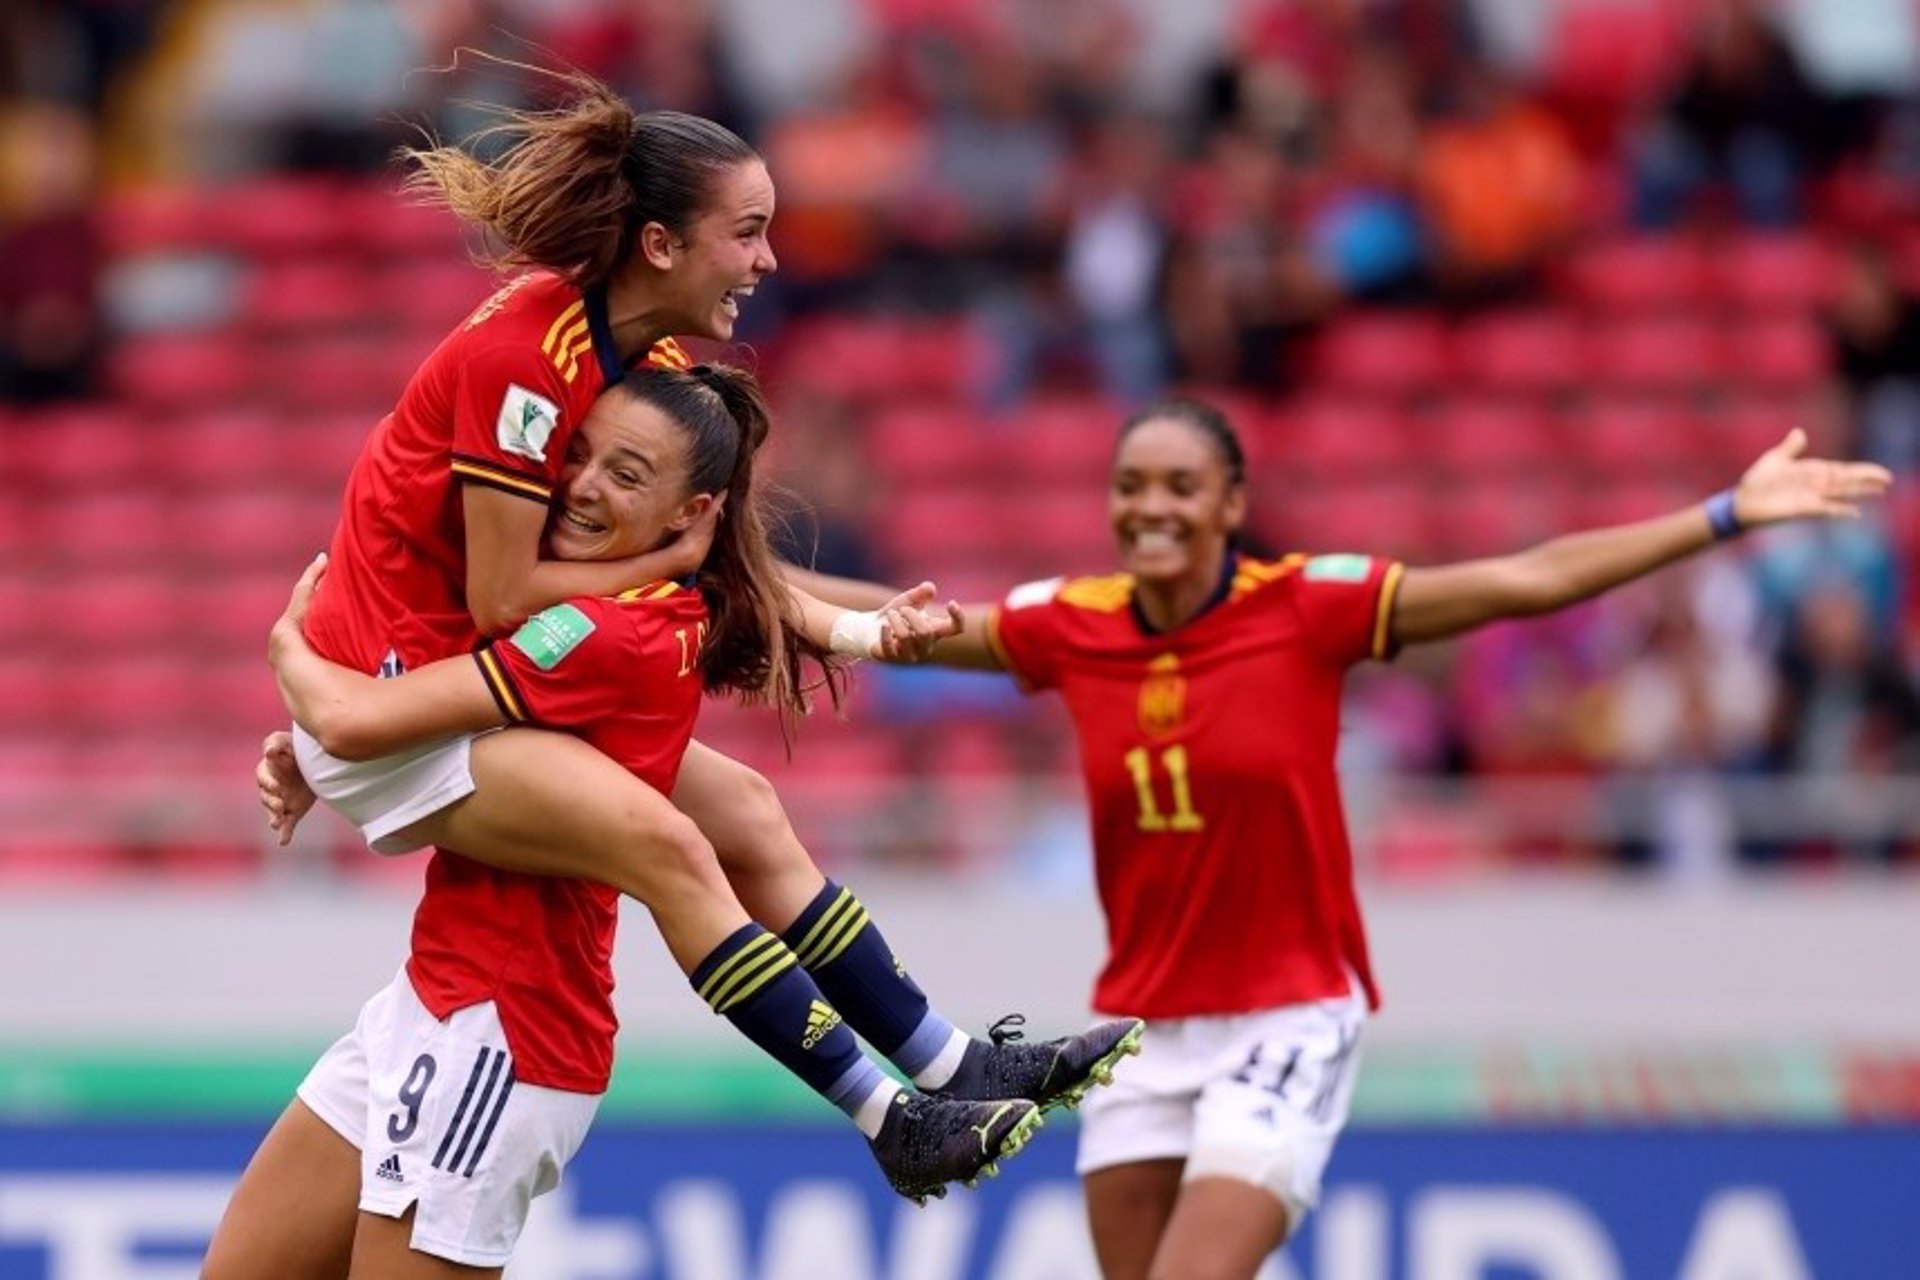 Galantería Adicto Registrarse España jugará la final del Mundial femenino sub-20 ante Japón